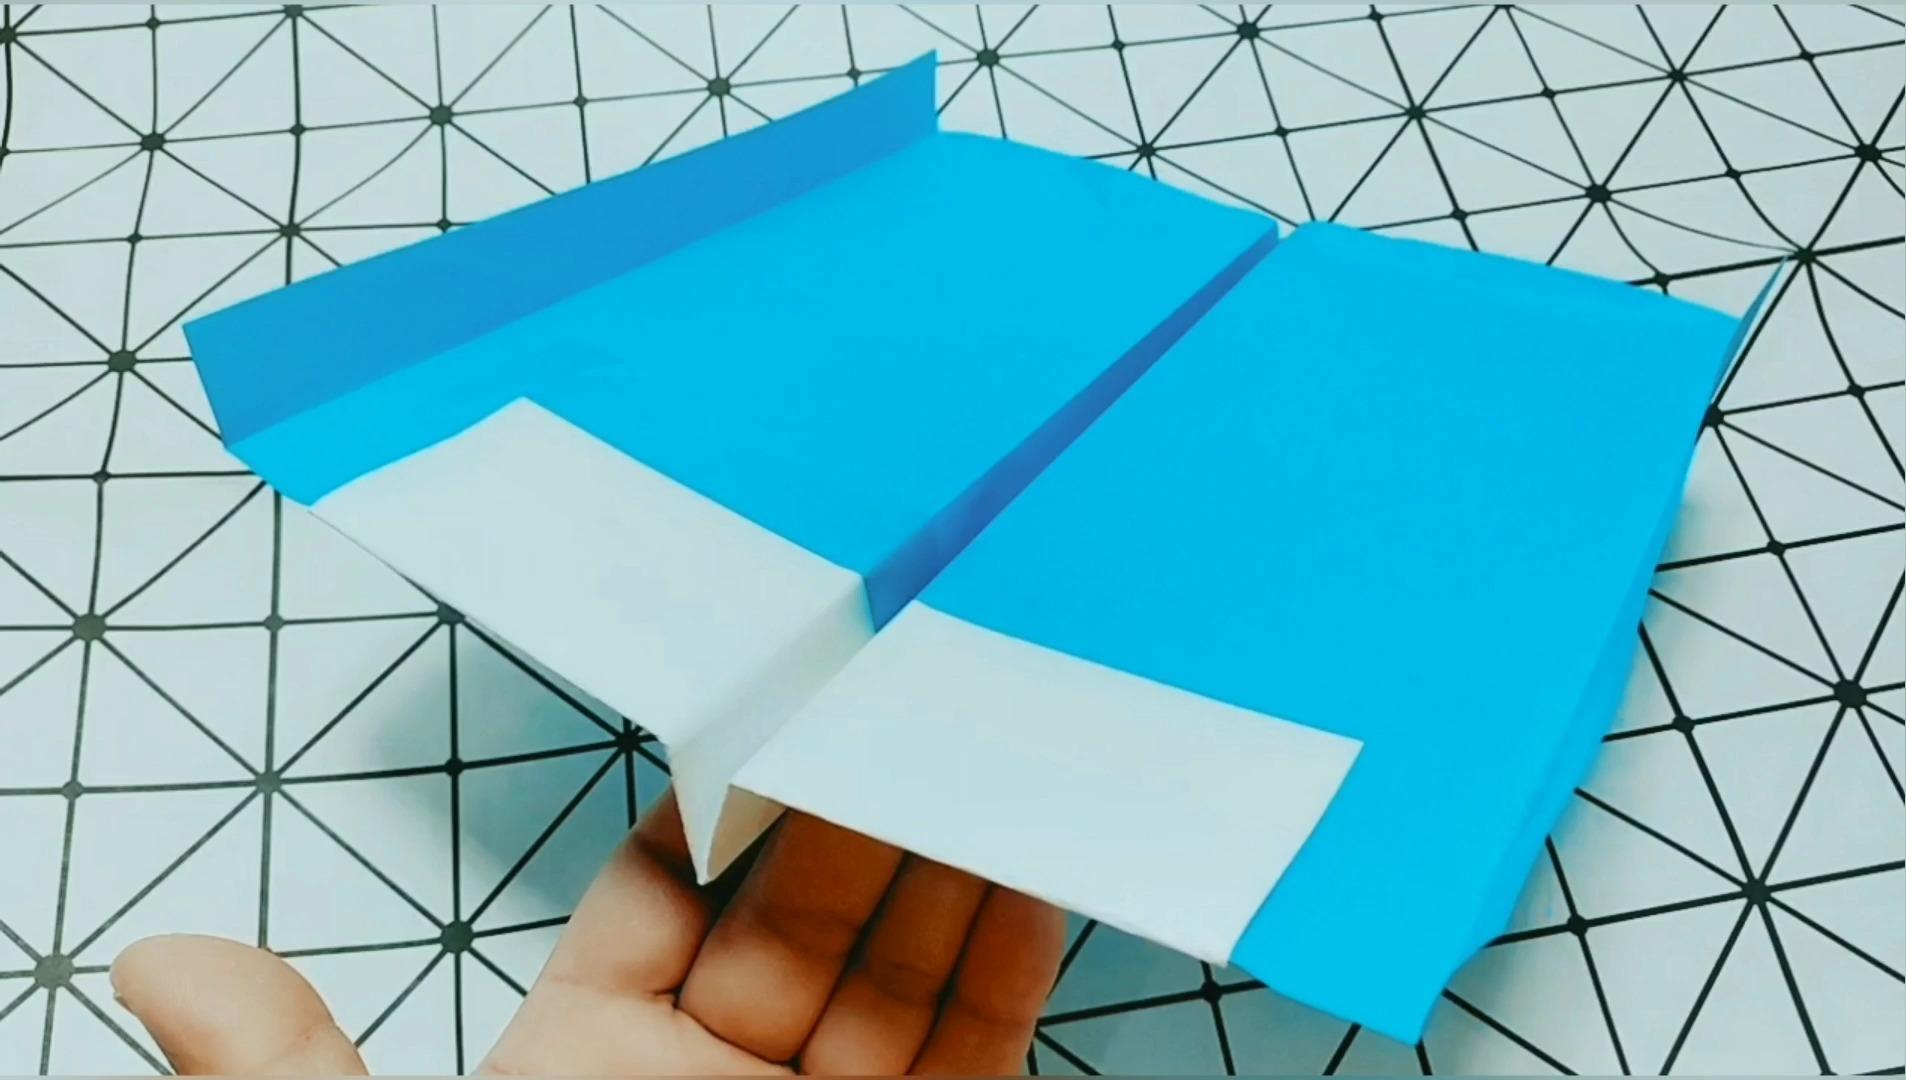 折纸飞机的方法 折纸飞机大全步骤图解_伊秀视频|yxlady.com